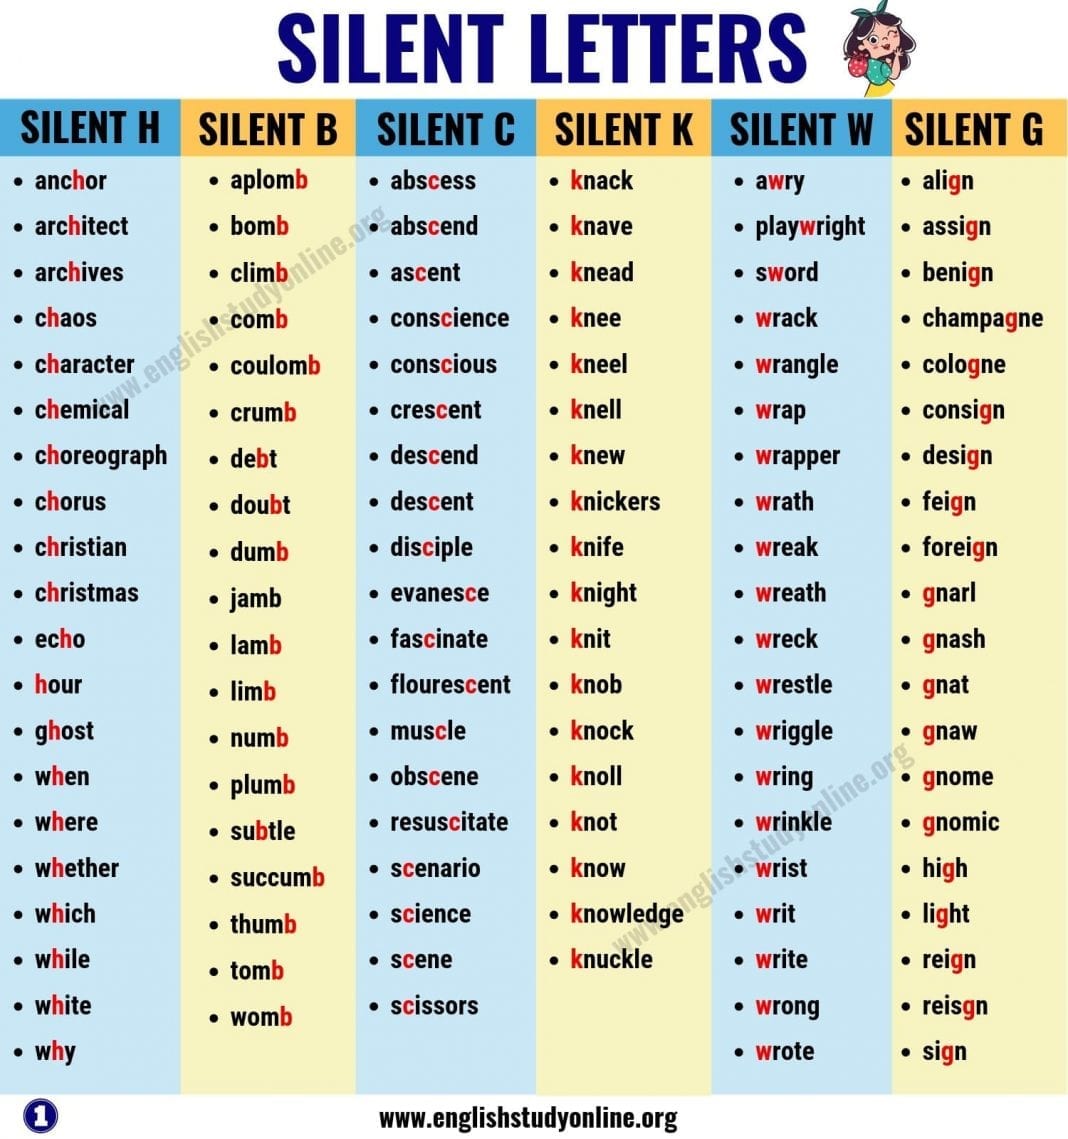 Sign Silent Letter